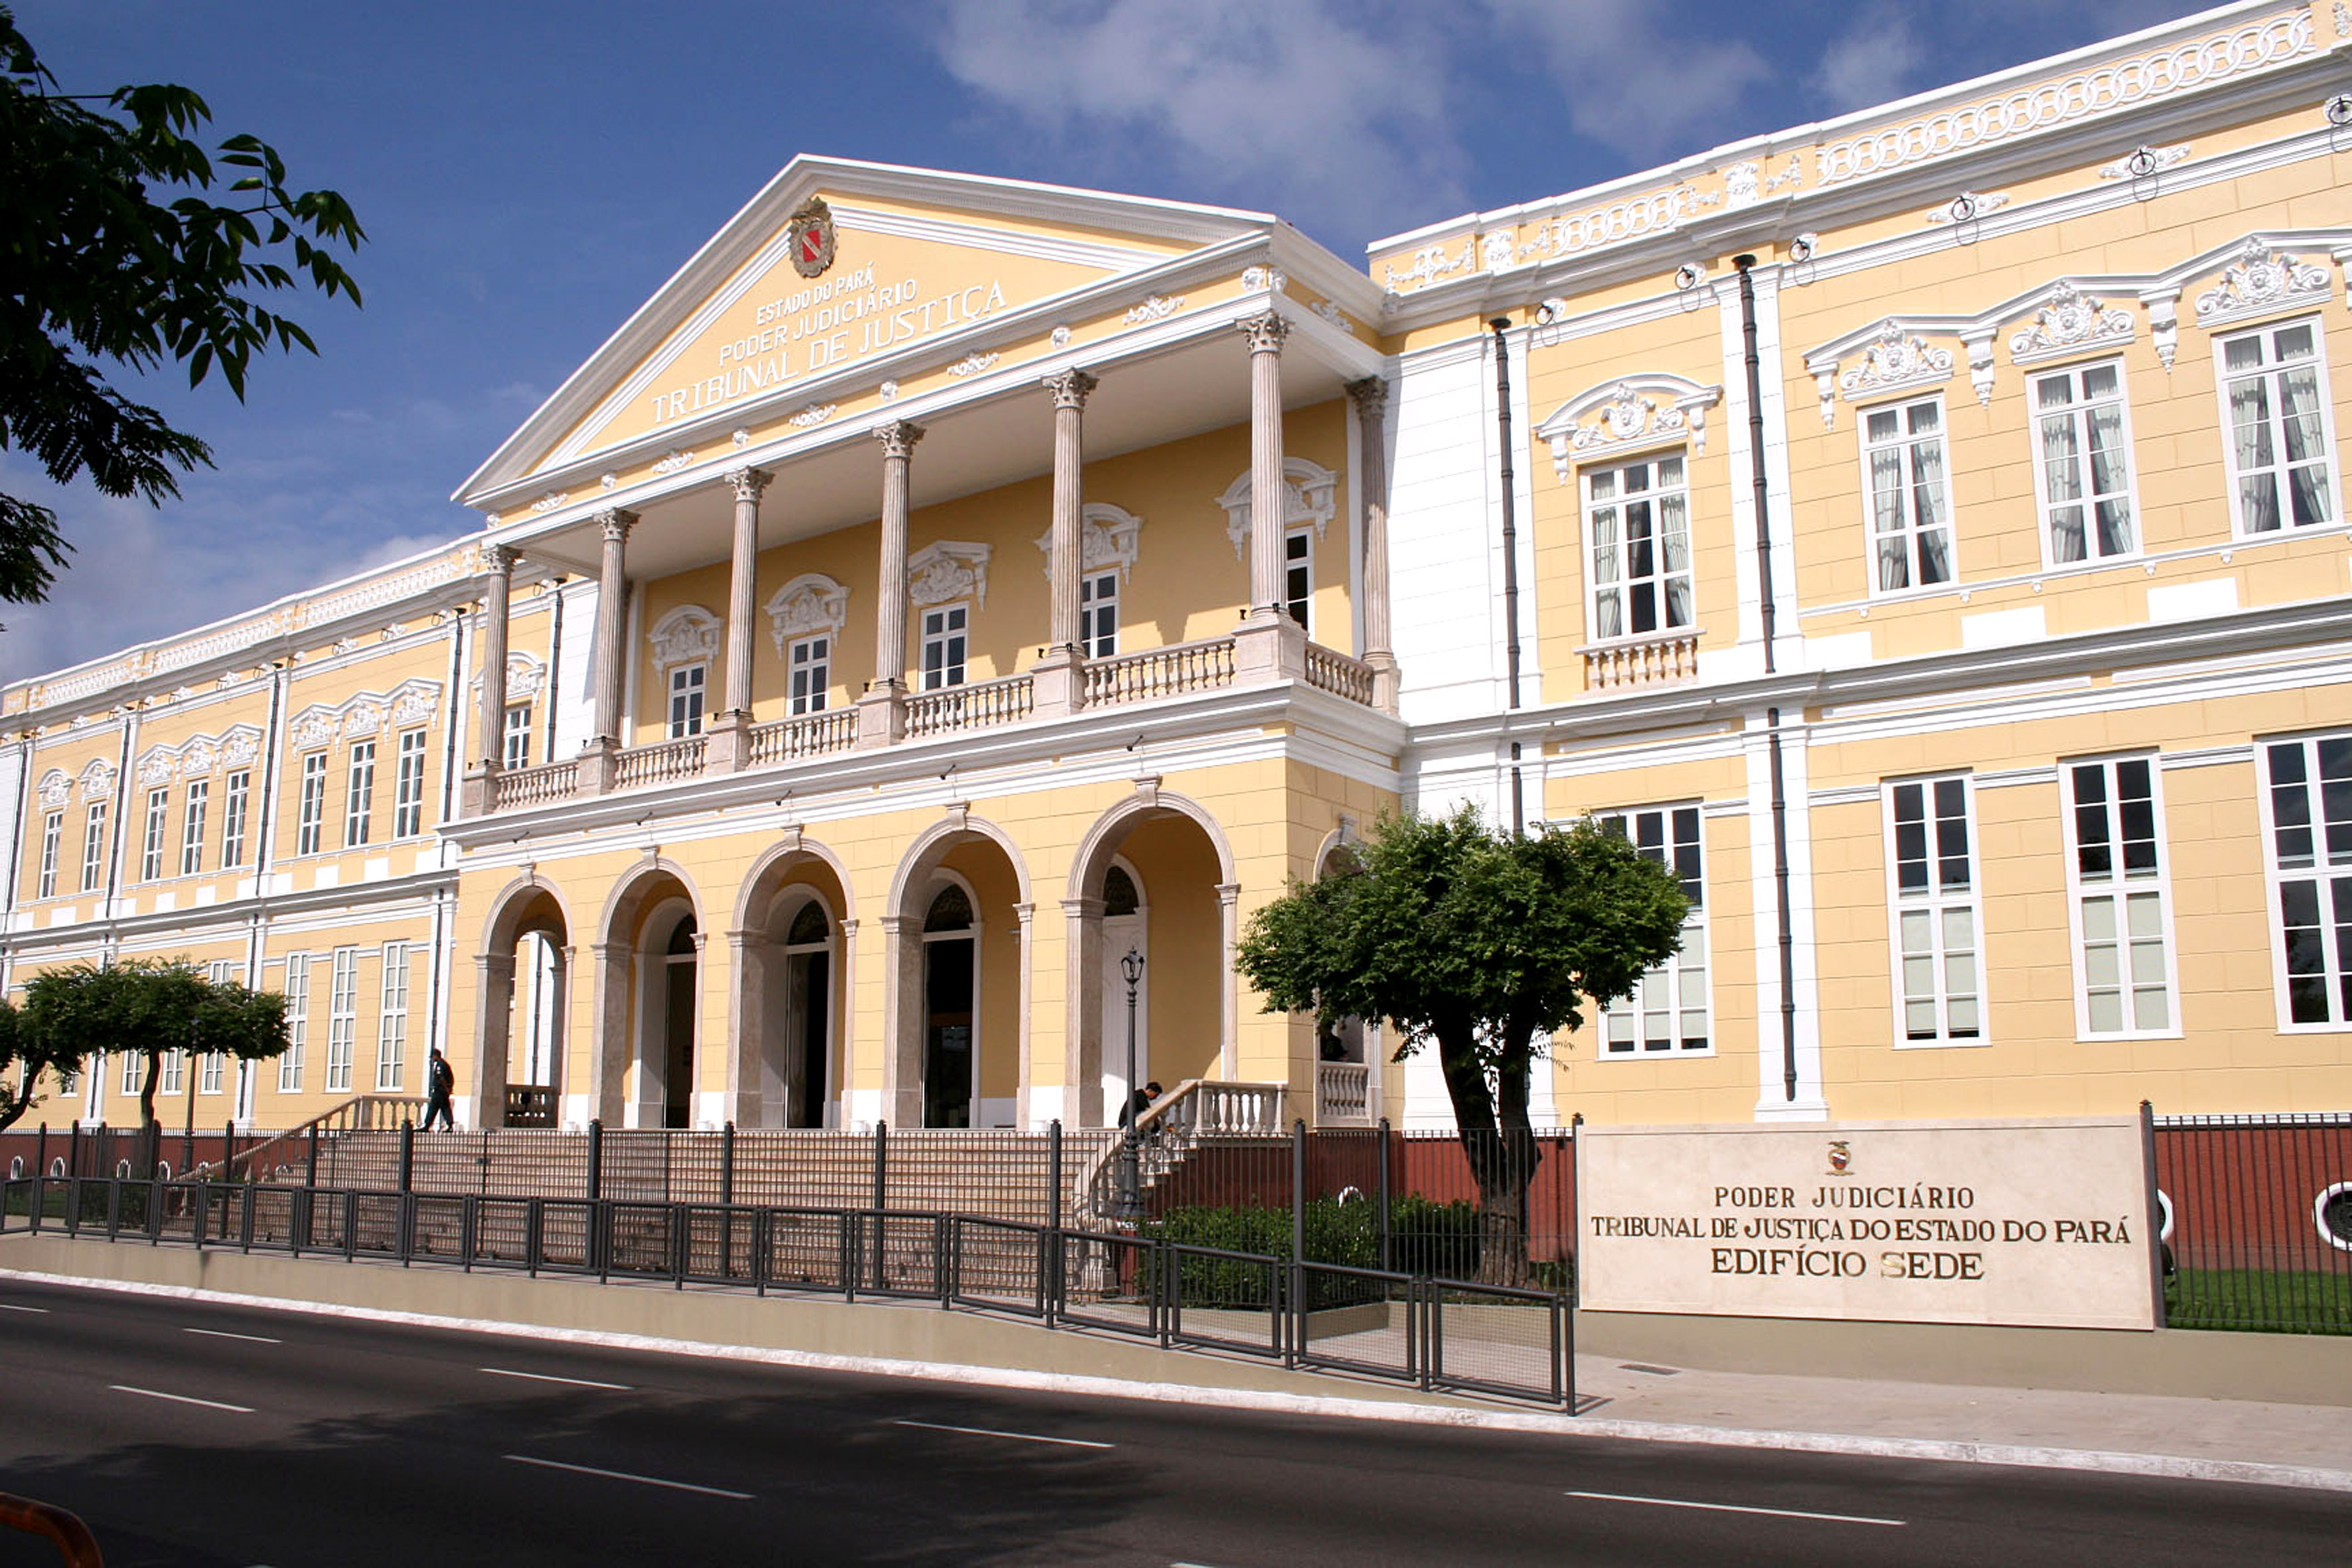 Sede do Tribunal de Justiça do Estado do Pará, em Belém